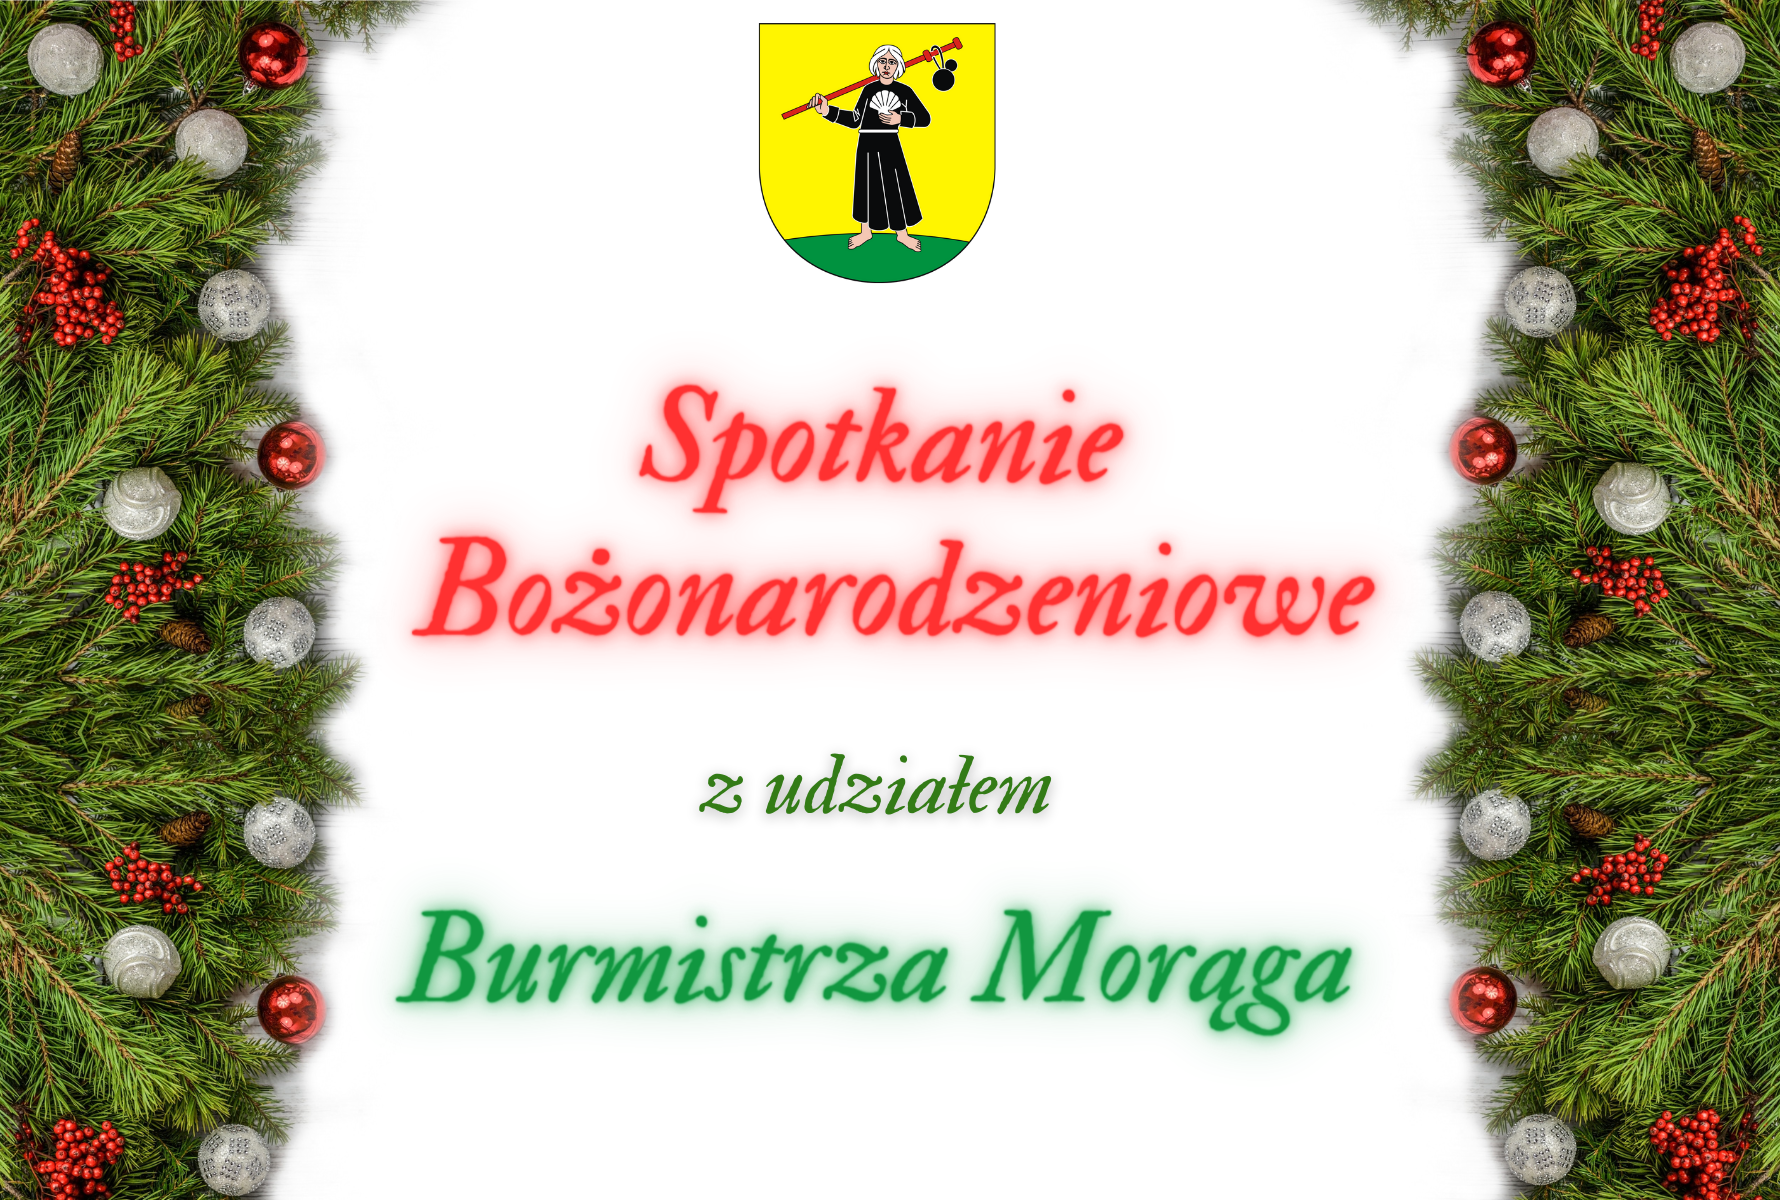 You are currently viewing Spotkanie Bożonarodzeniowe